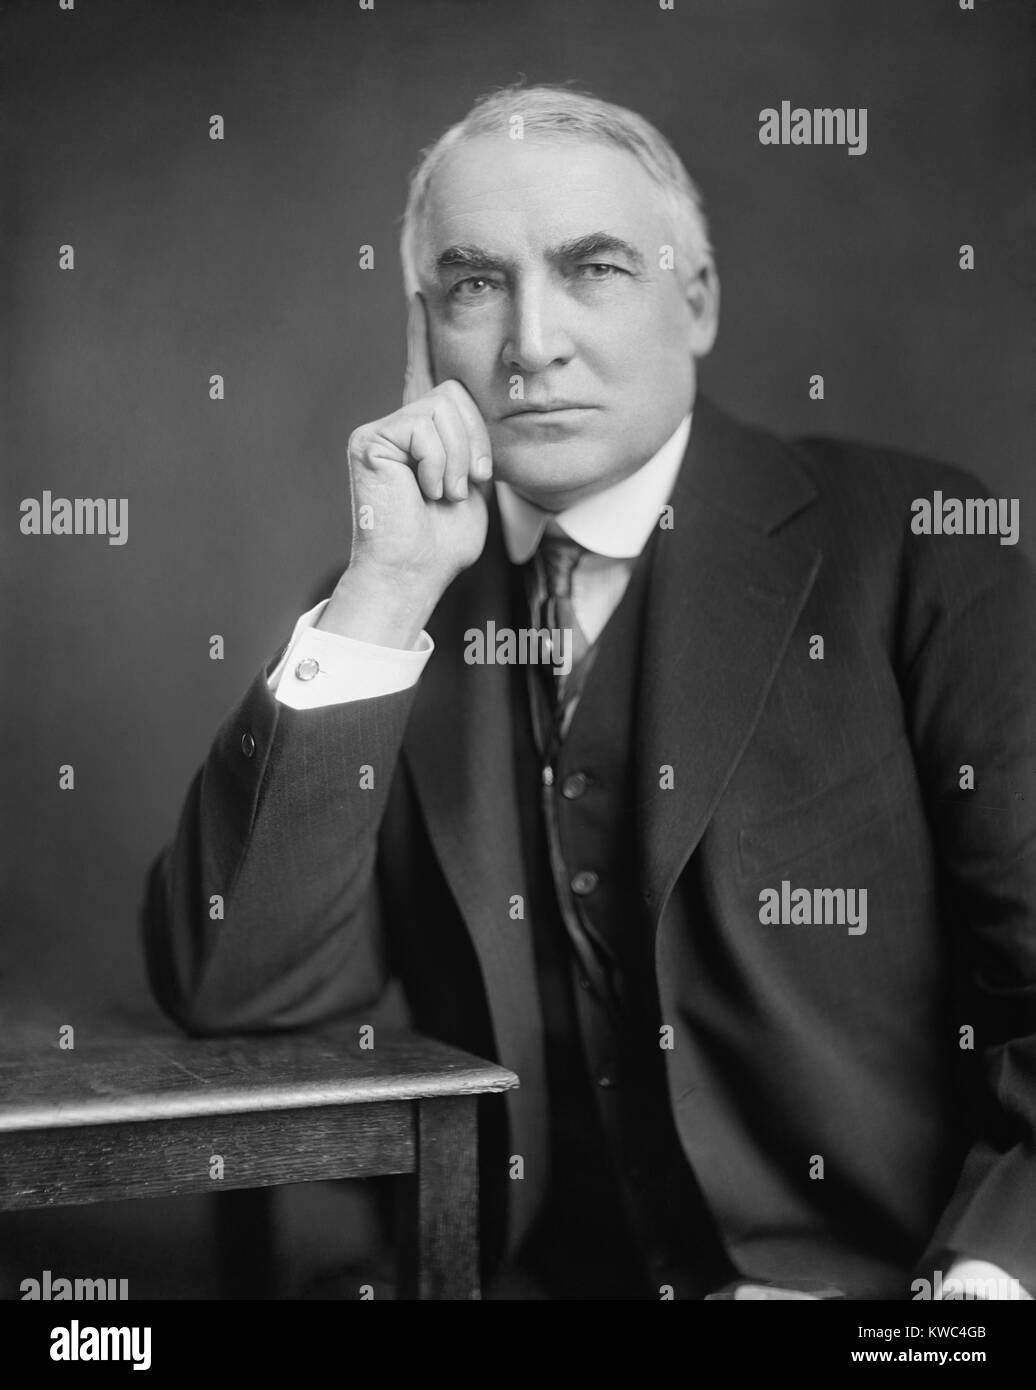 Präsident Warren Harding, Ca. 1921-23. Er war Präsident von weniger als zweieinhalb Jahren, als er während einer Tour durch die westlichen Staaten am 2. August 1923 starb. (BSLOC 2015 15 3) Stockfoto